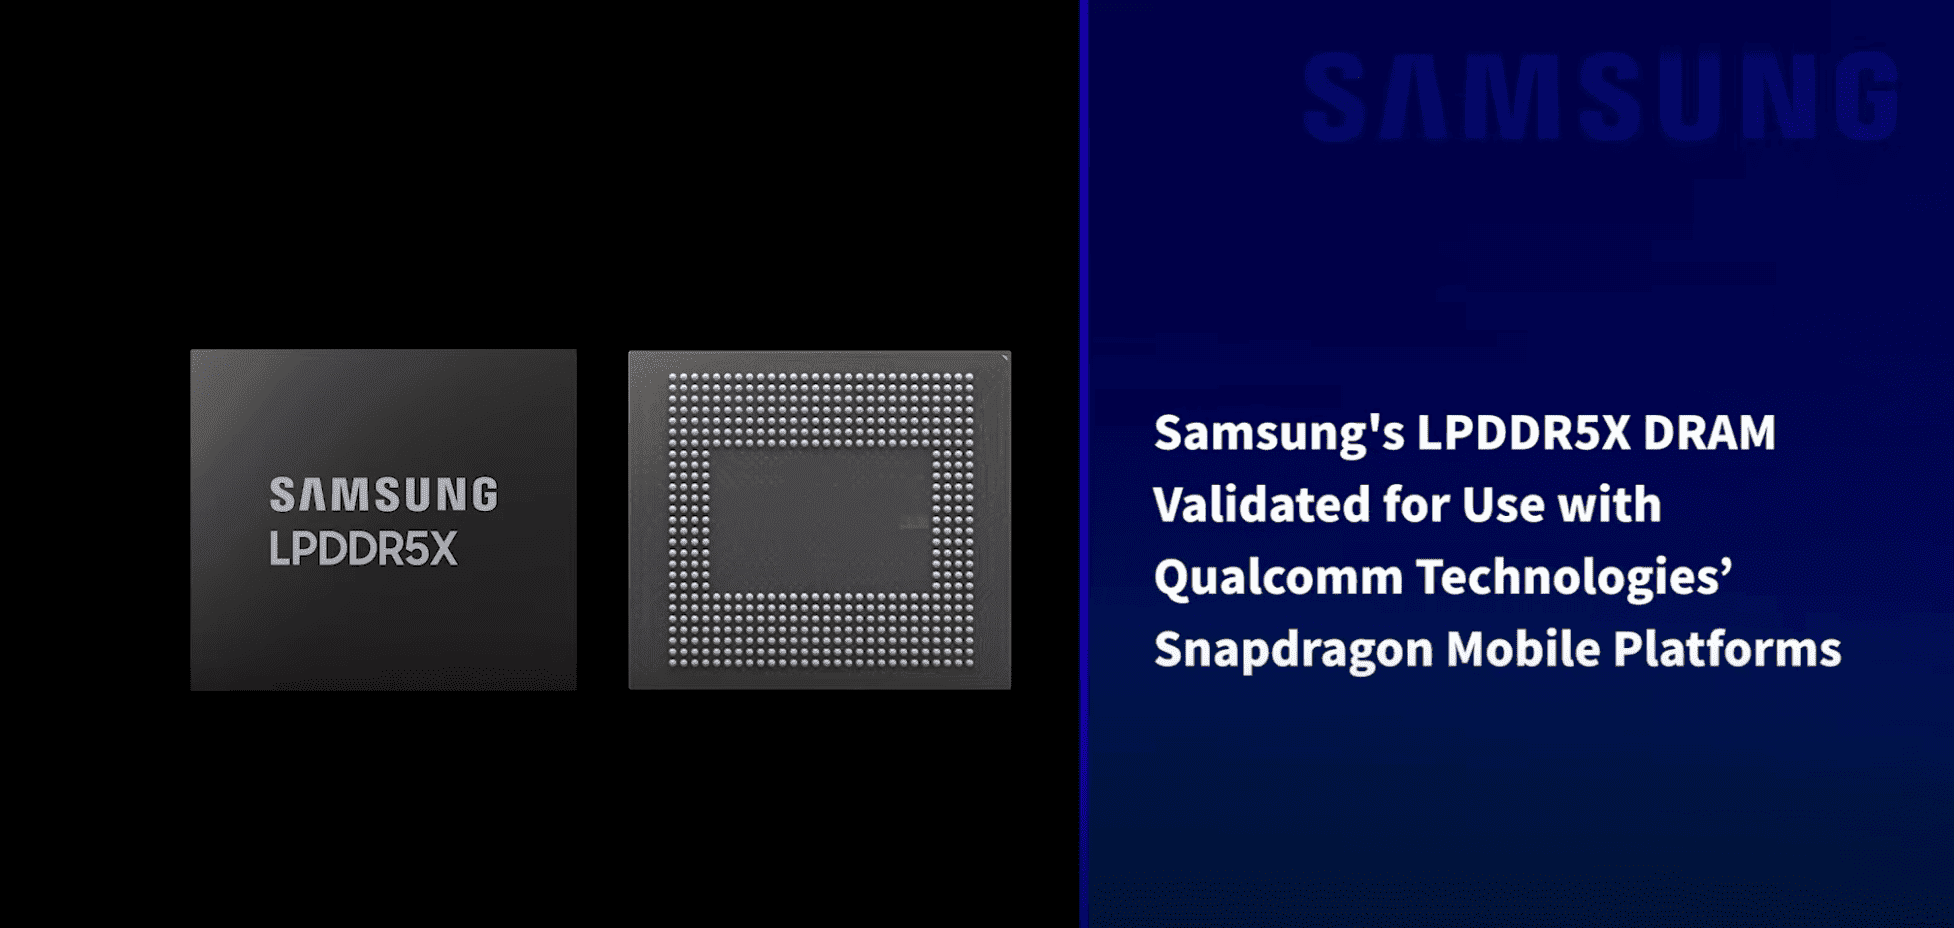 A Qualcomm érvényesíti a Samsung LPDDR5X DRAM-ját a Snapdragon mobileszközökön való használatra